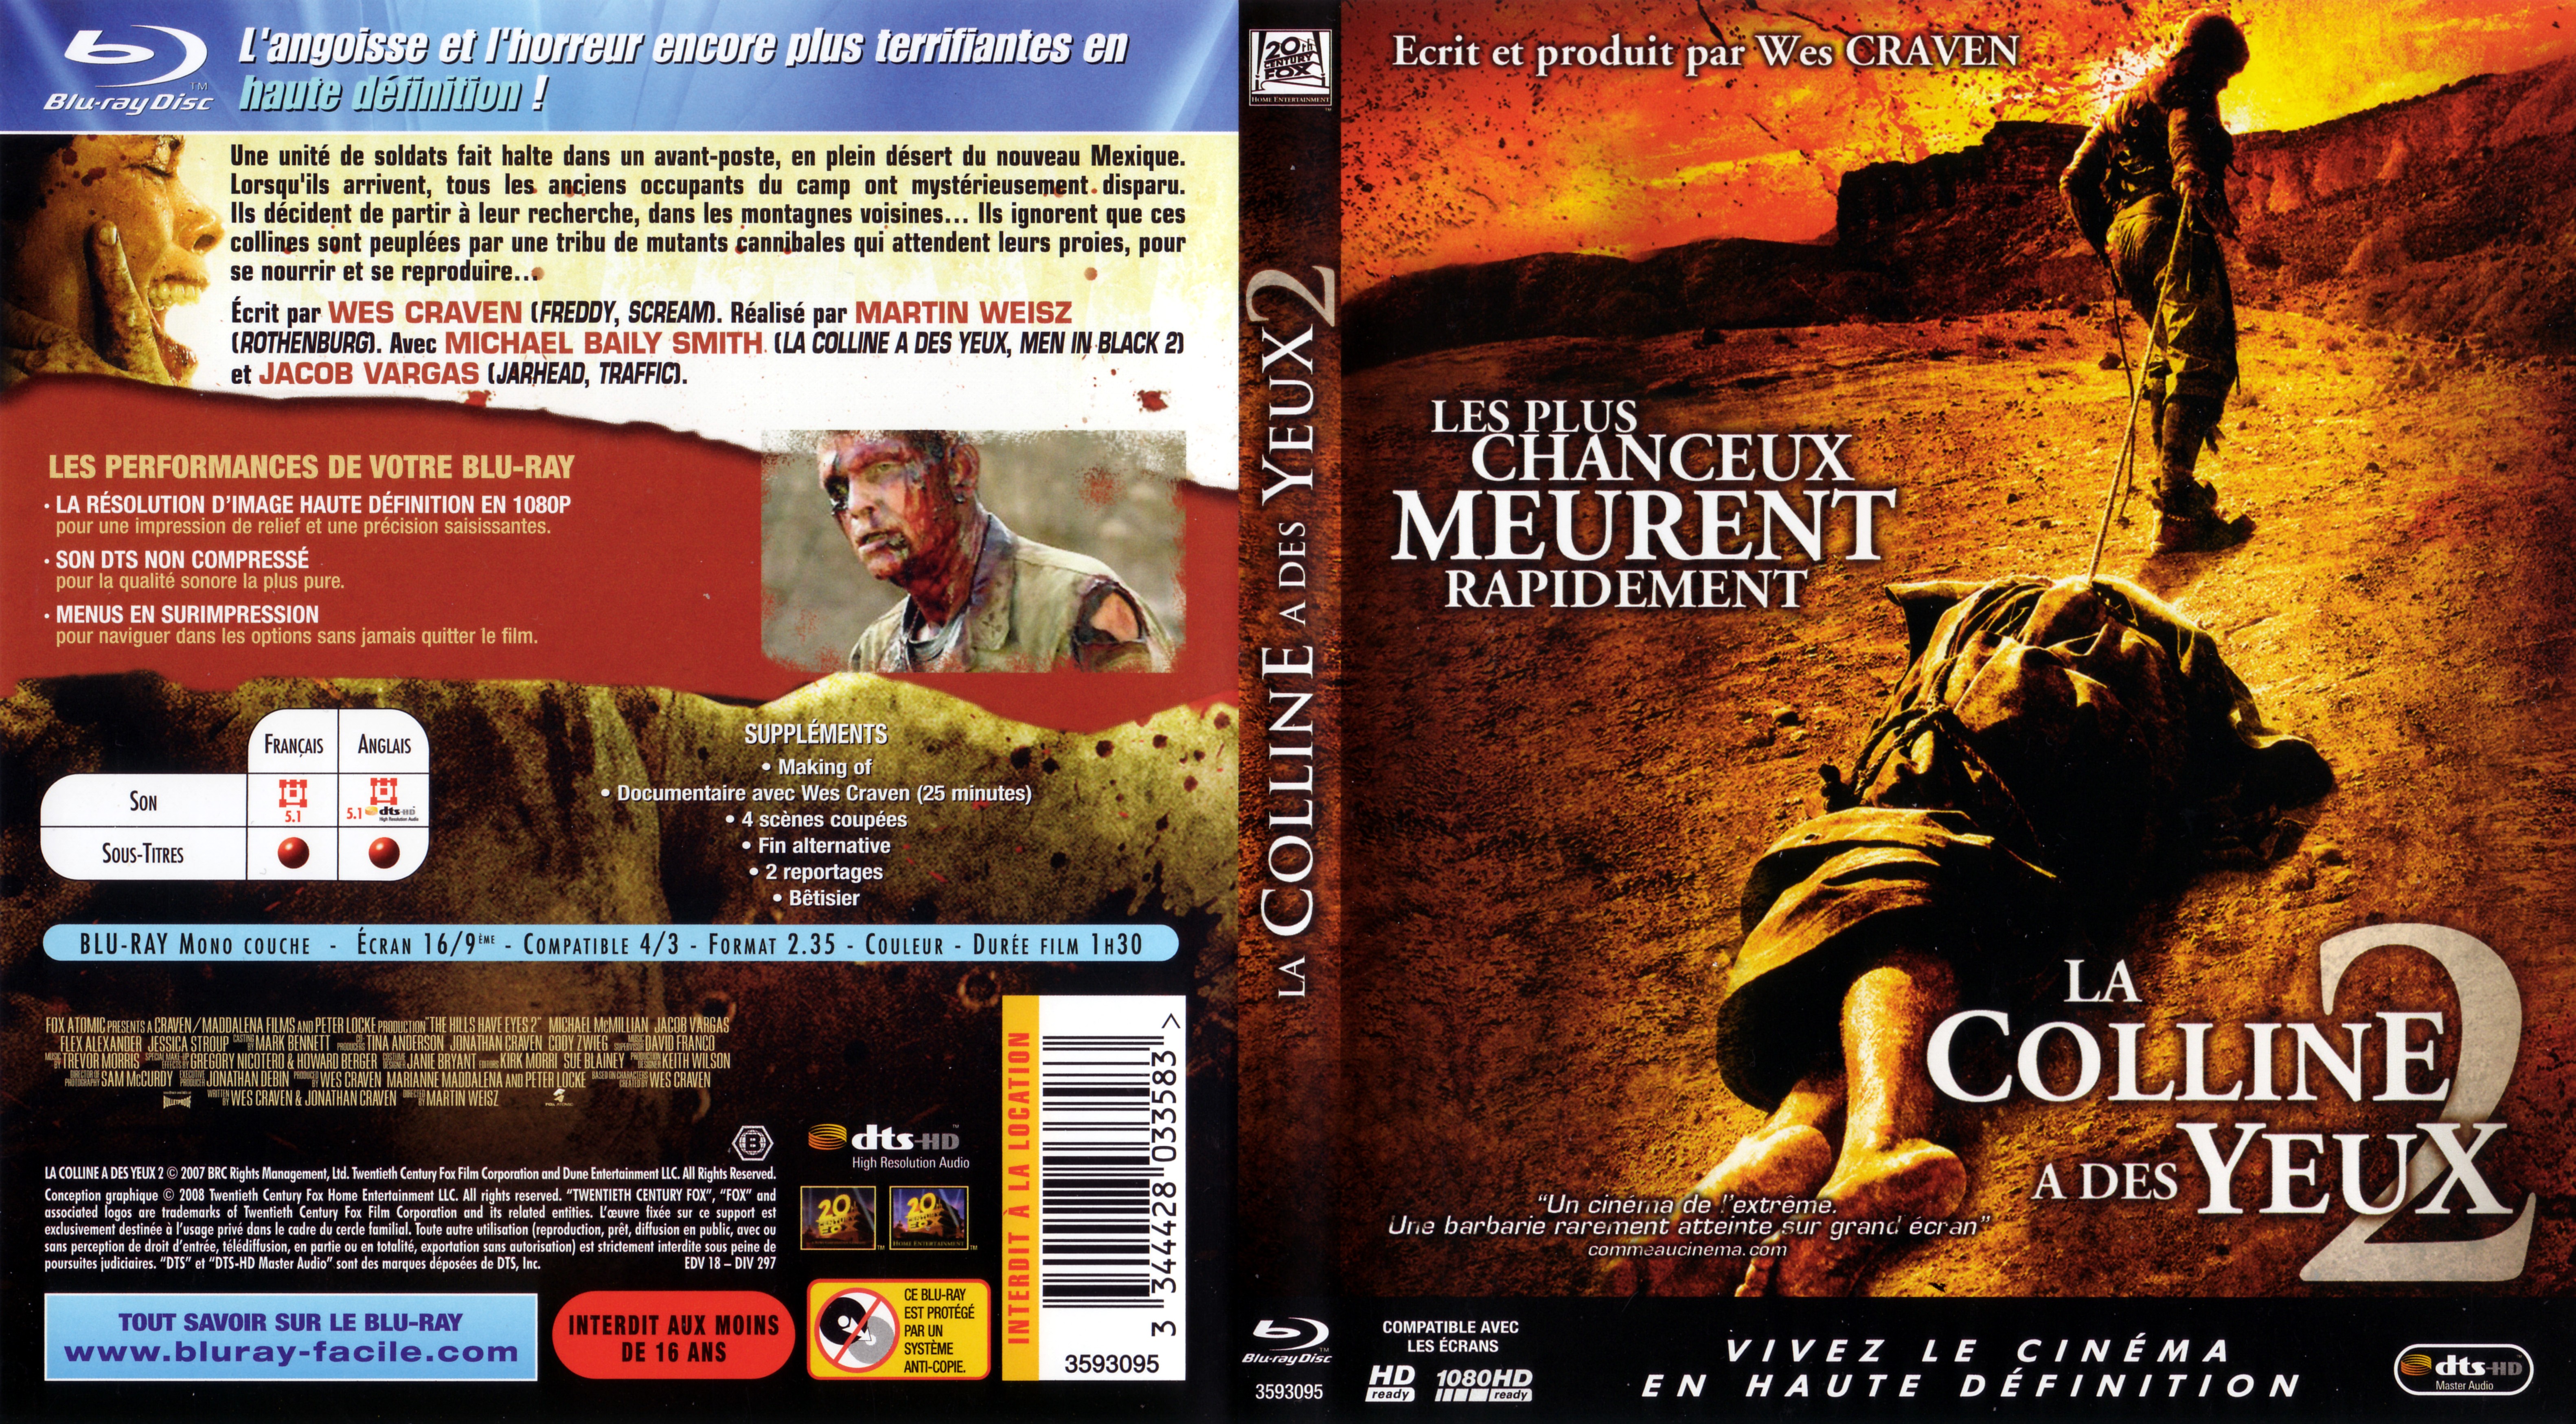 Jaquette DVD La colline a des yeux 2 (2007) (BLU-RAY)